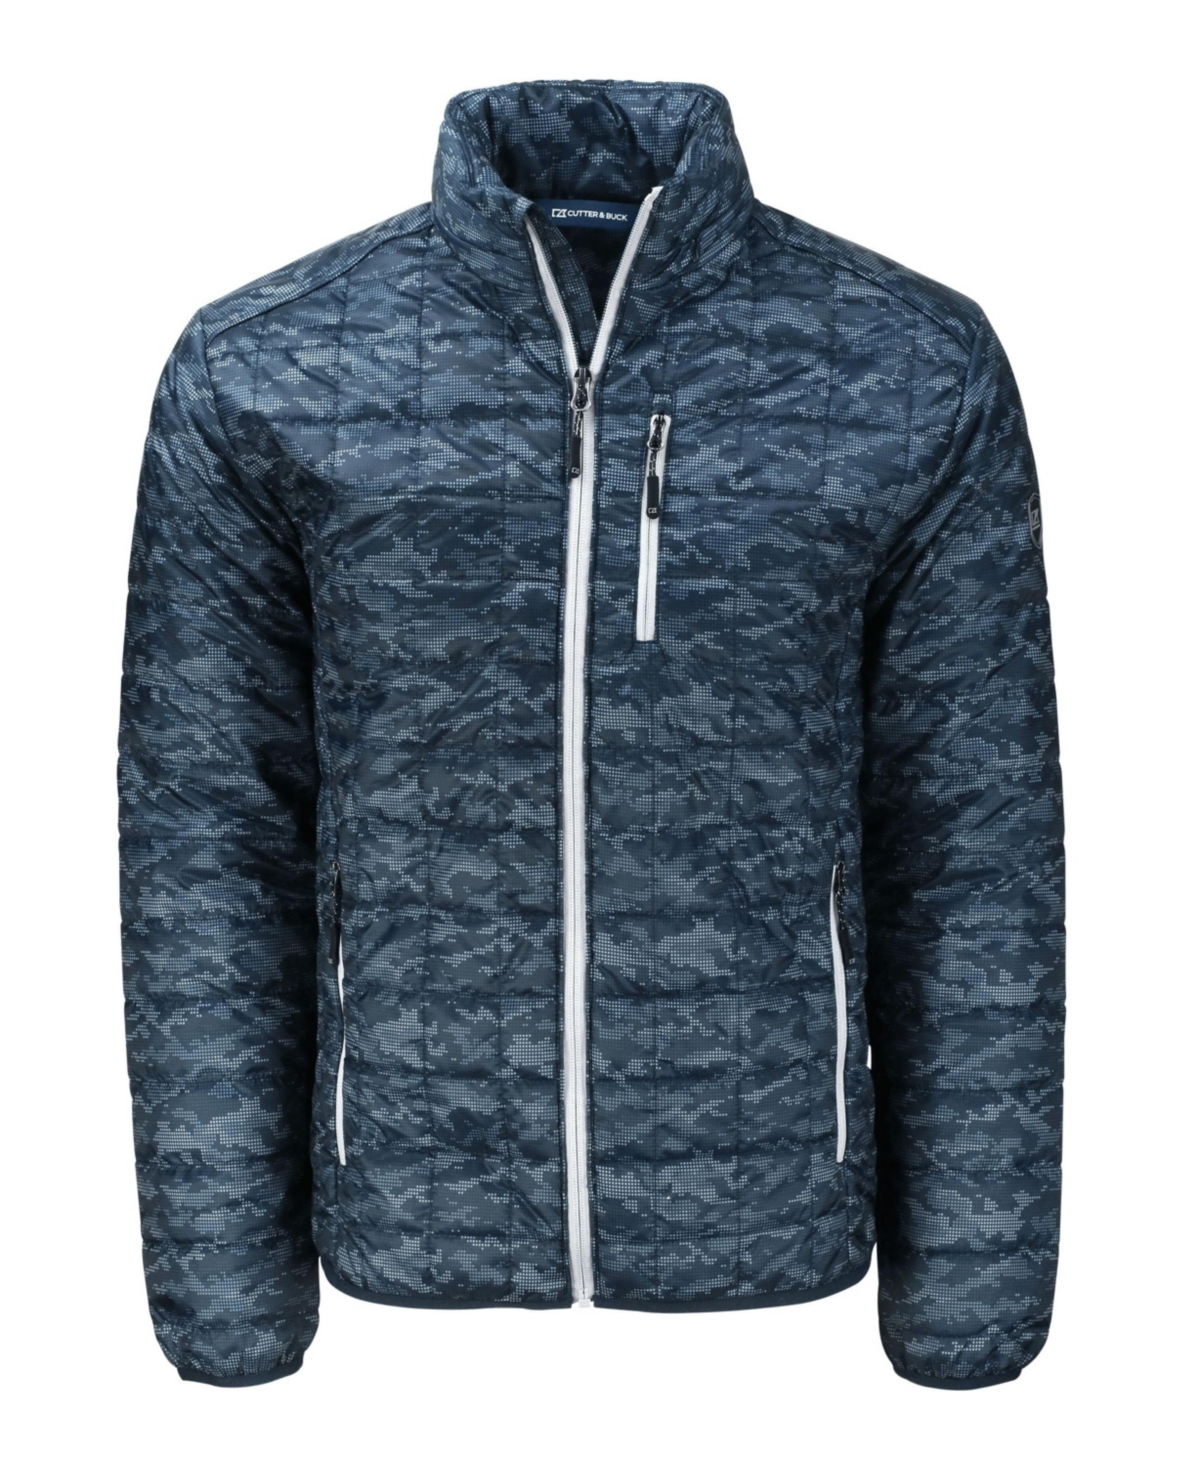 Men's Rainier PrimaLoft Eco Insulated Full Zip Printed Puffer Jacket - Dark navy